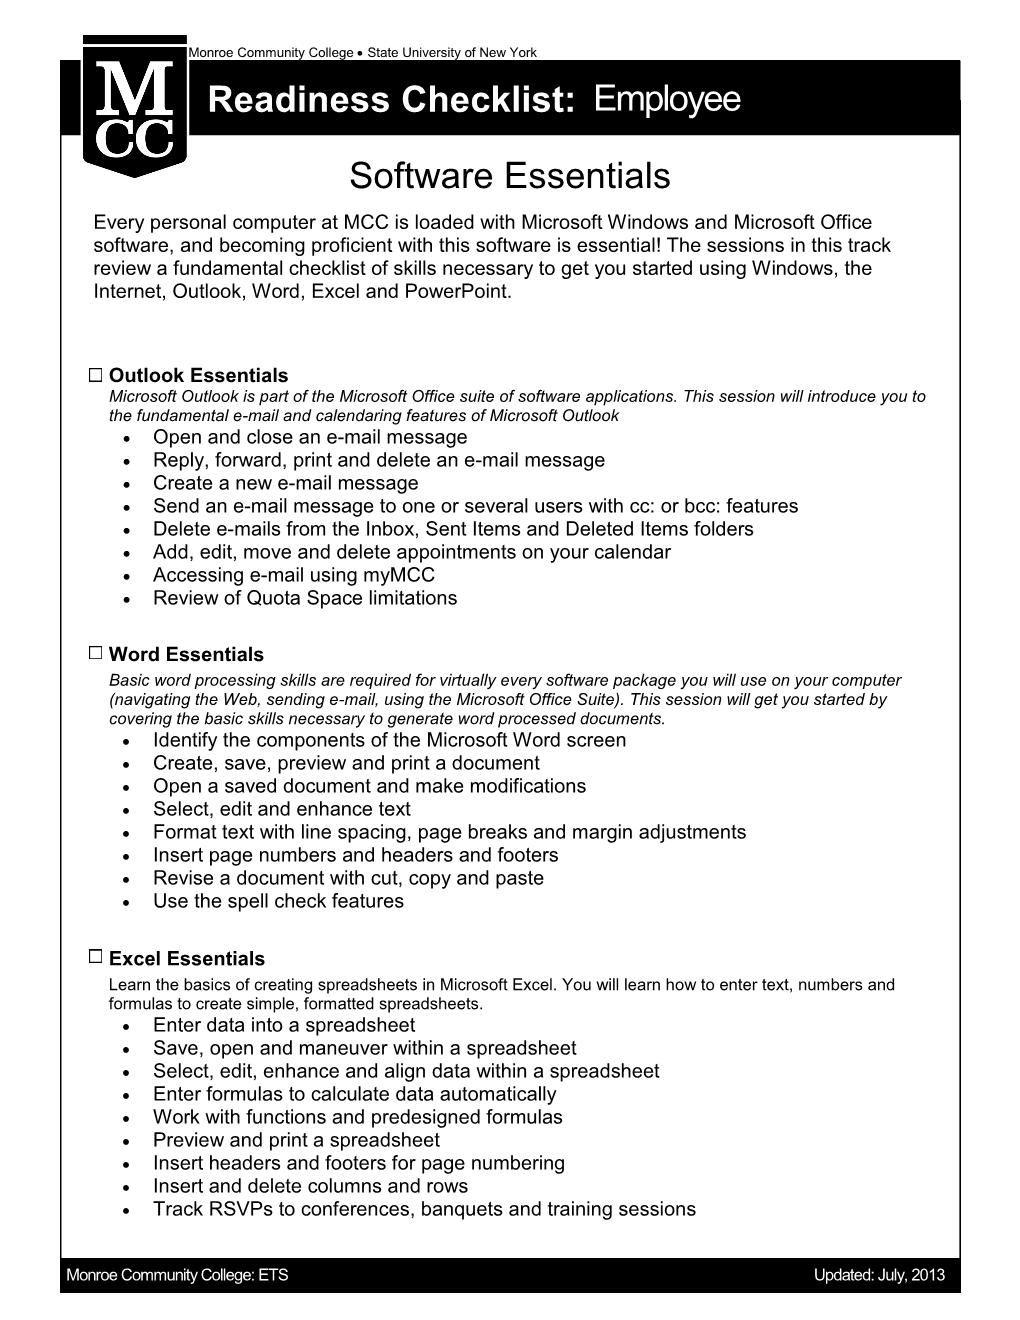 Readiness Checklist: Employee Software Essentials